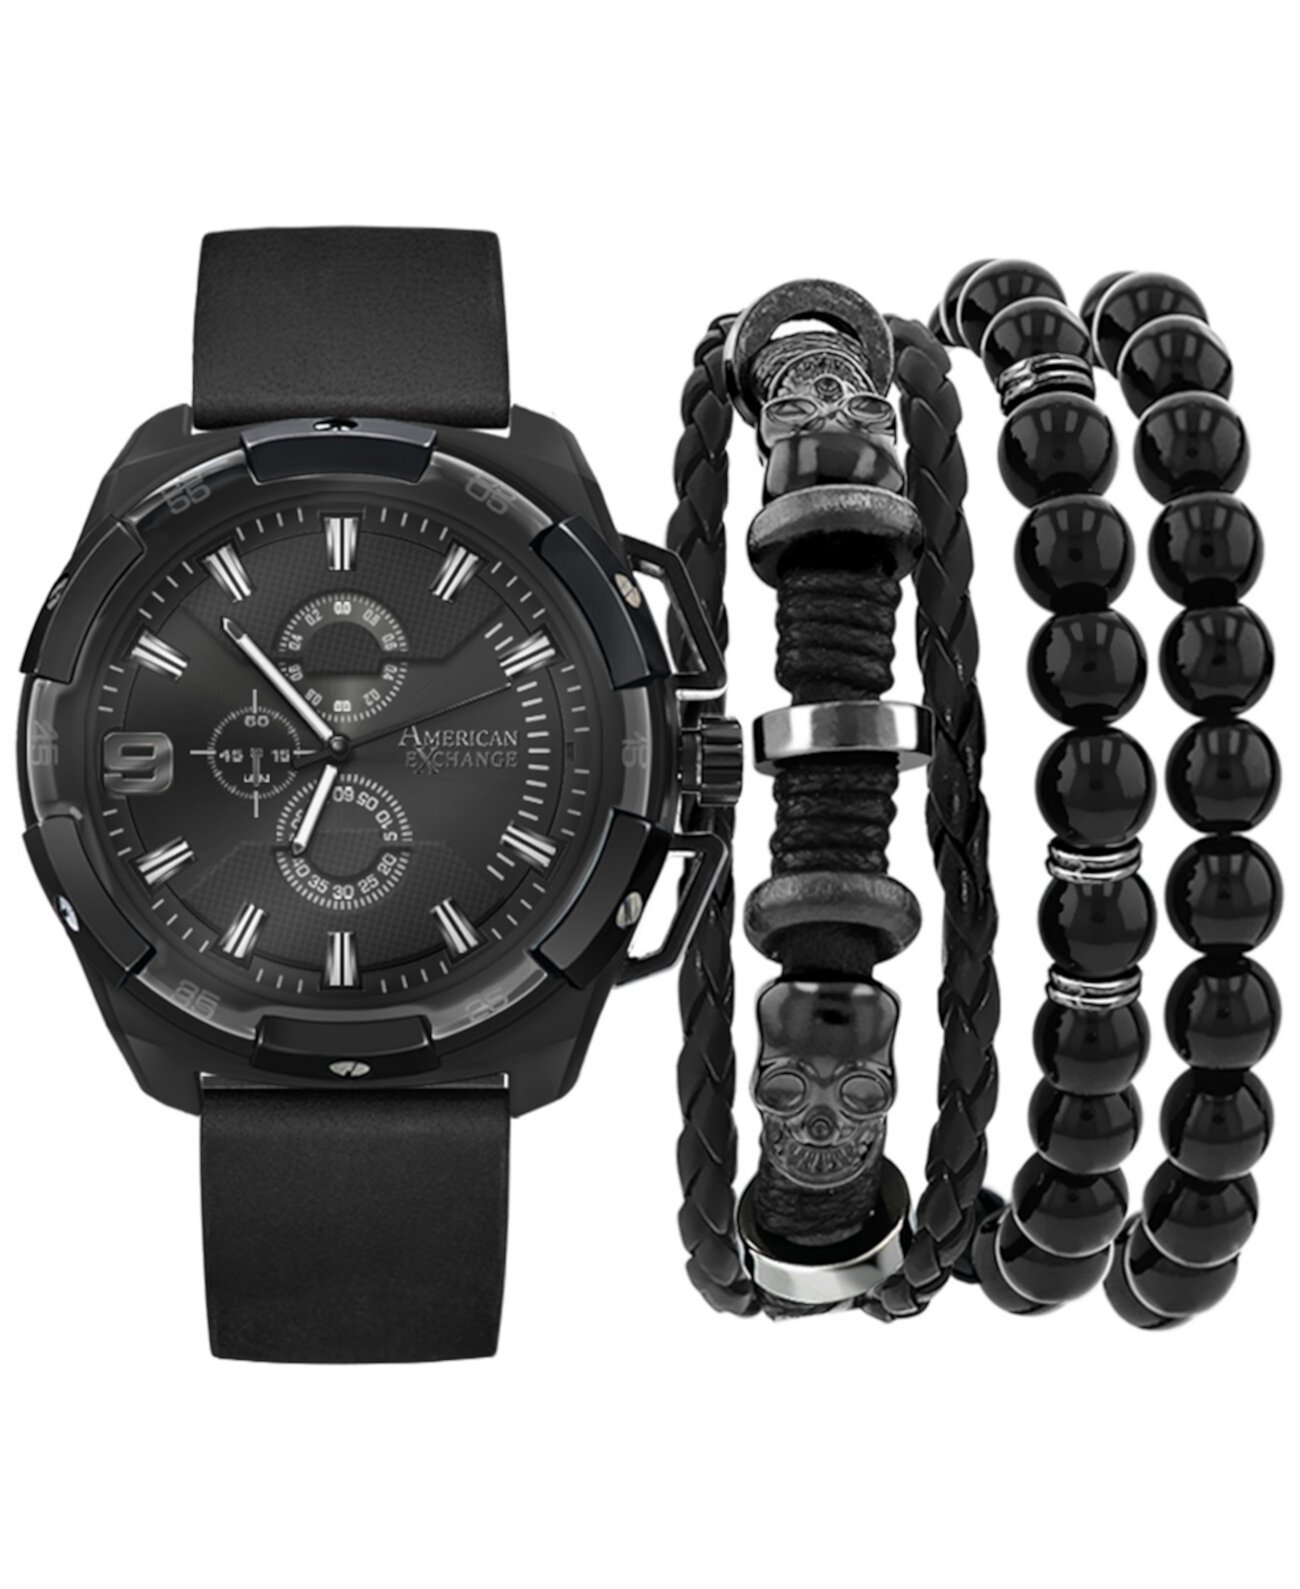 Мужские часы с черным полиуретановым ремешком, 40 мм, подарочный набор American Exchange